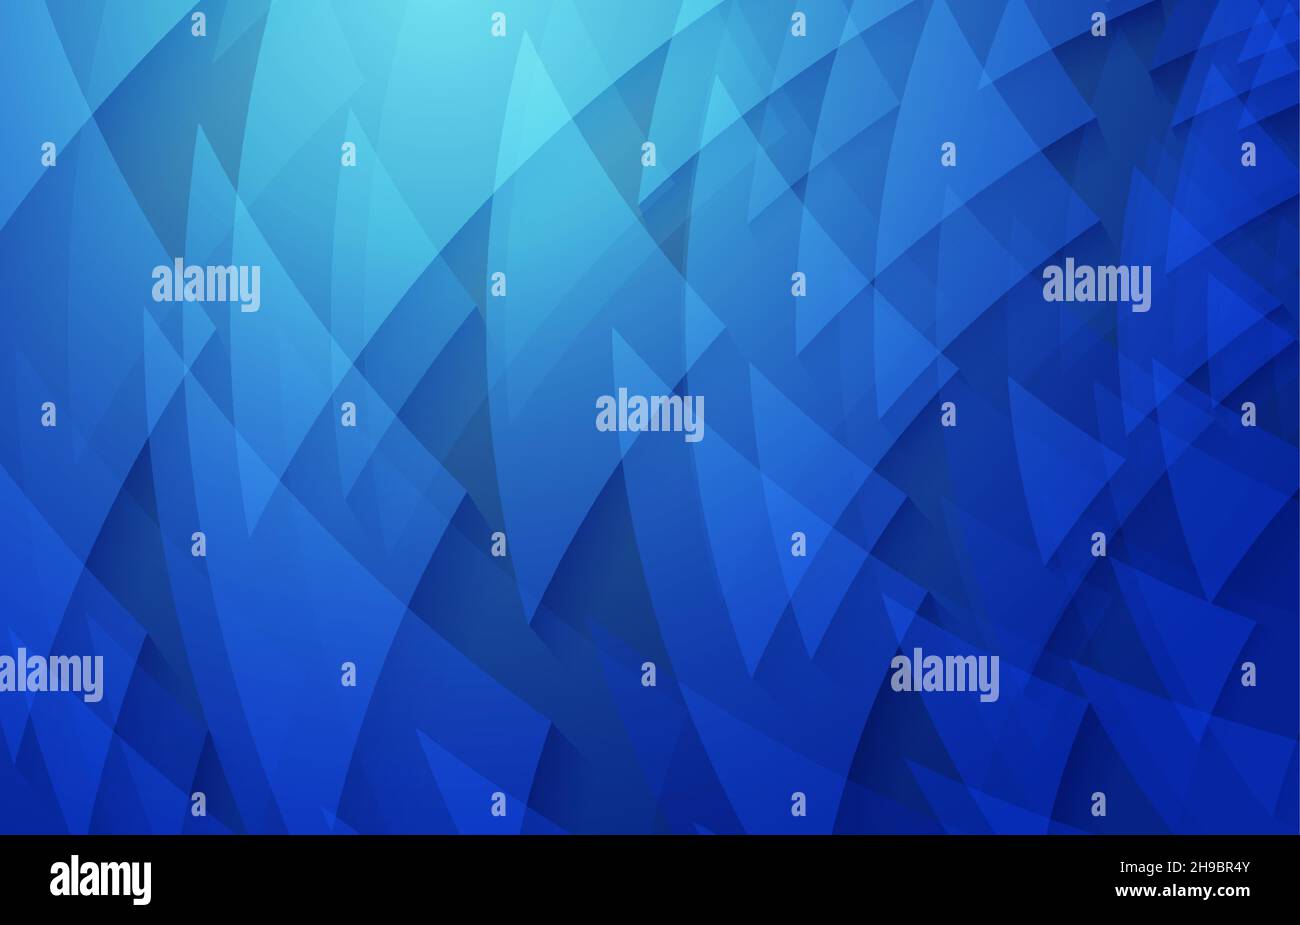 Abstrakte Dreiecke wirbeln geometrische Schablone Design von Farbverlauf blau. Überlappung für futuristischen Vorlagenhintergrund. Illustrationsvektor Stock Vektor